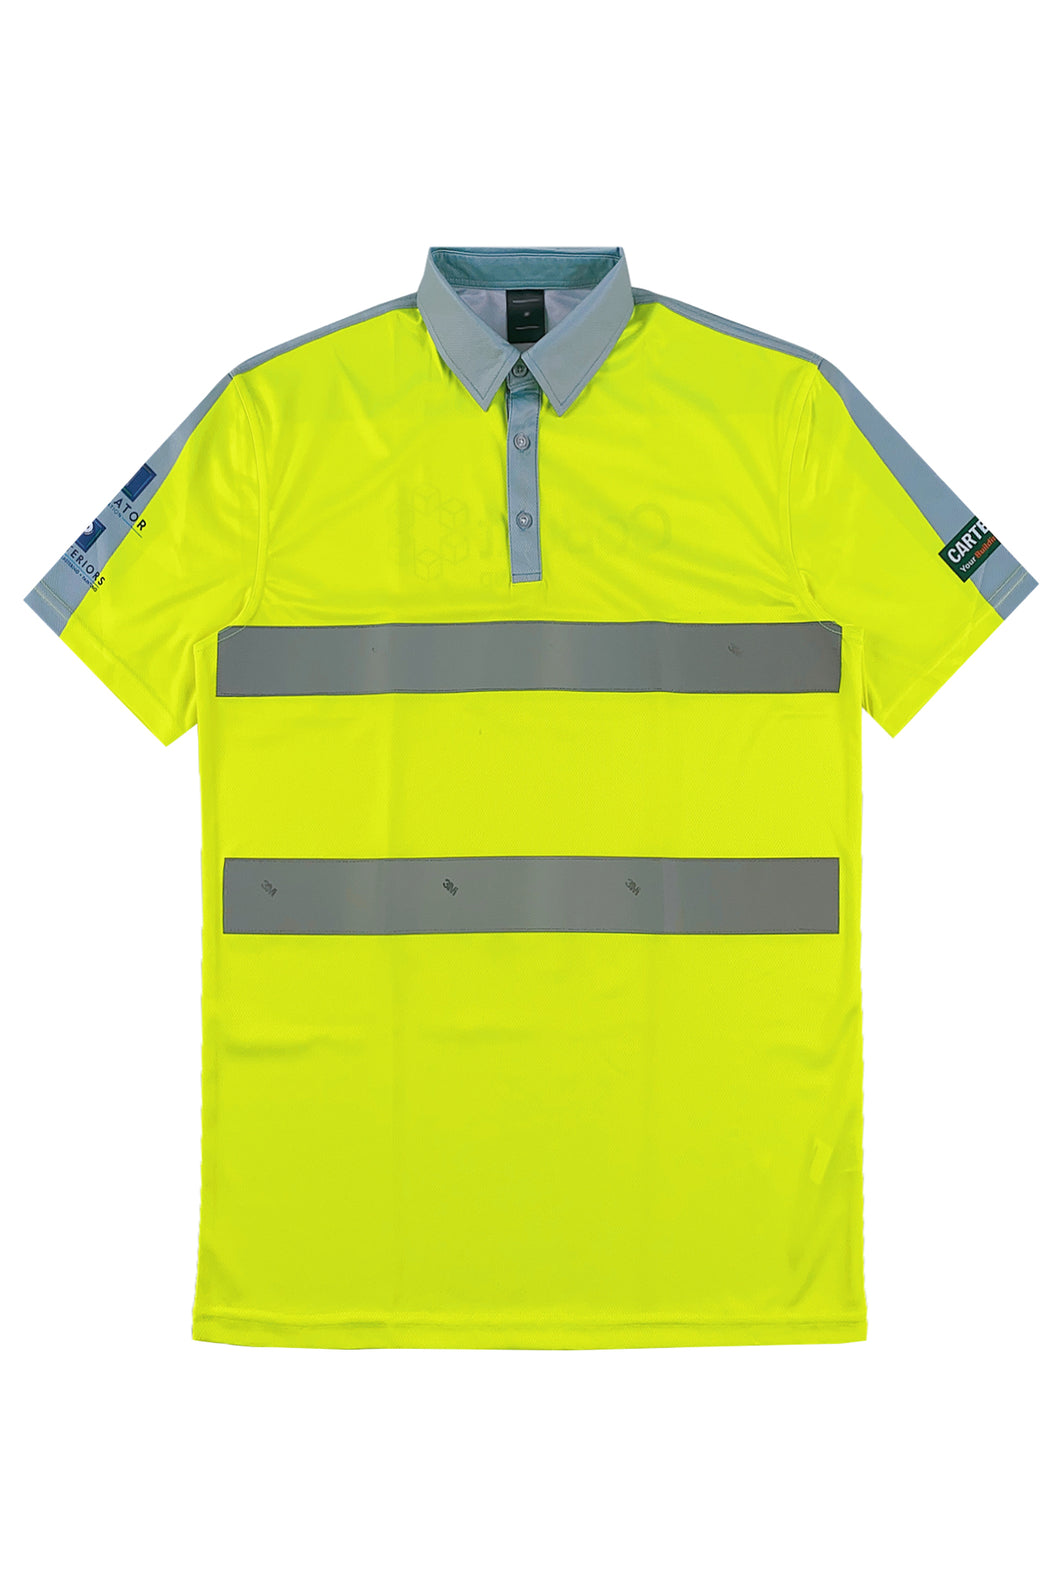 大量訂購螢光黃短袖反光Polo恤 荷蘭  D398